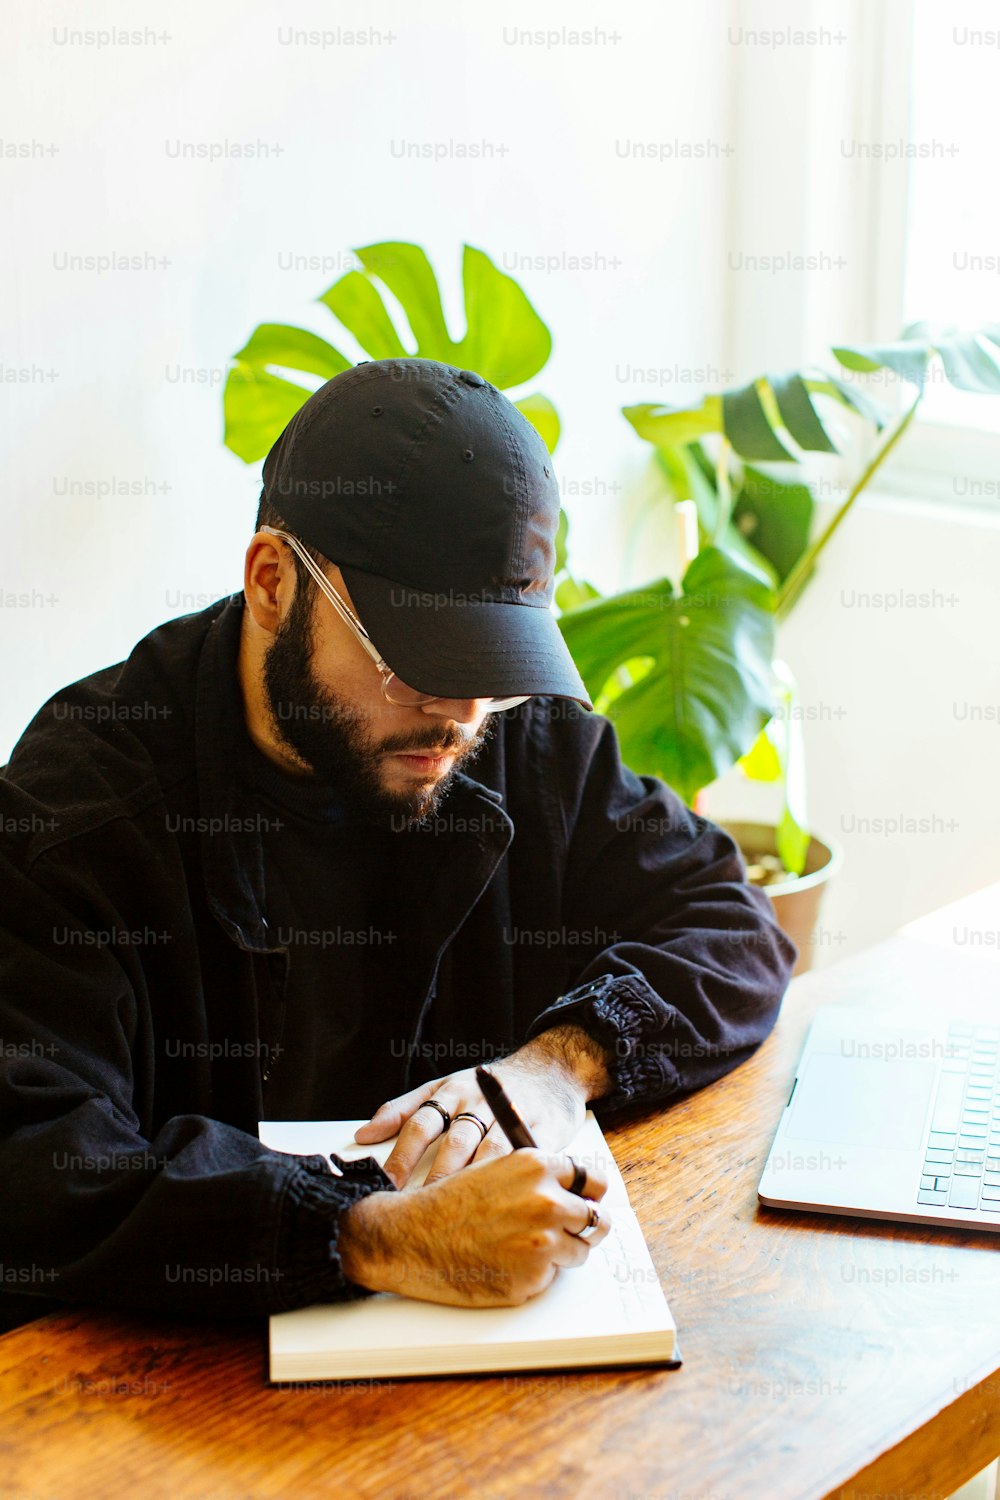 Un homme assis à une table écrivant sur un morceau de papier